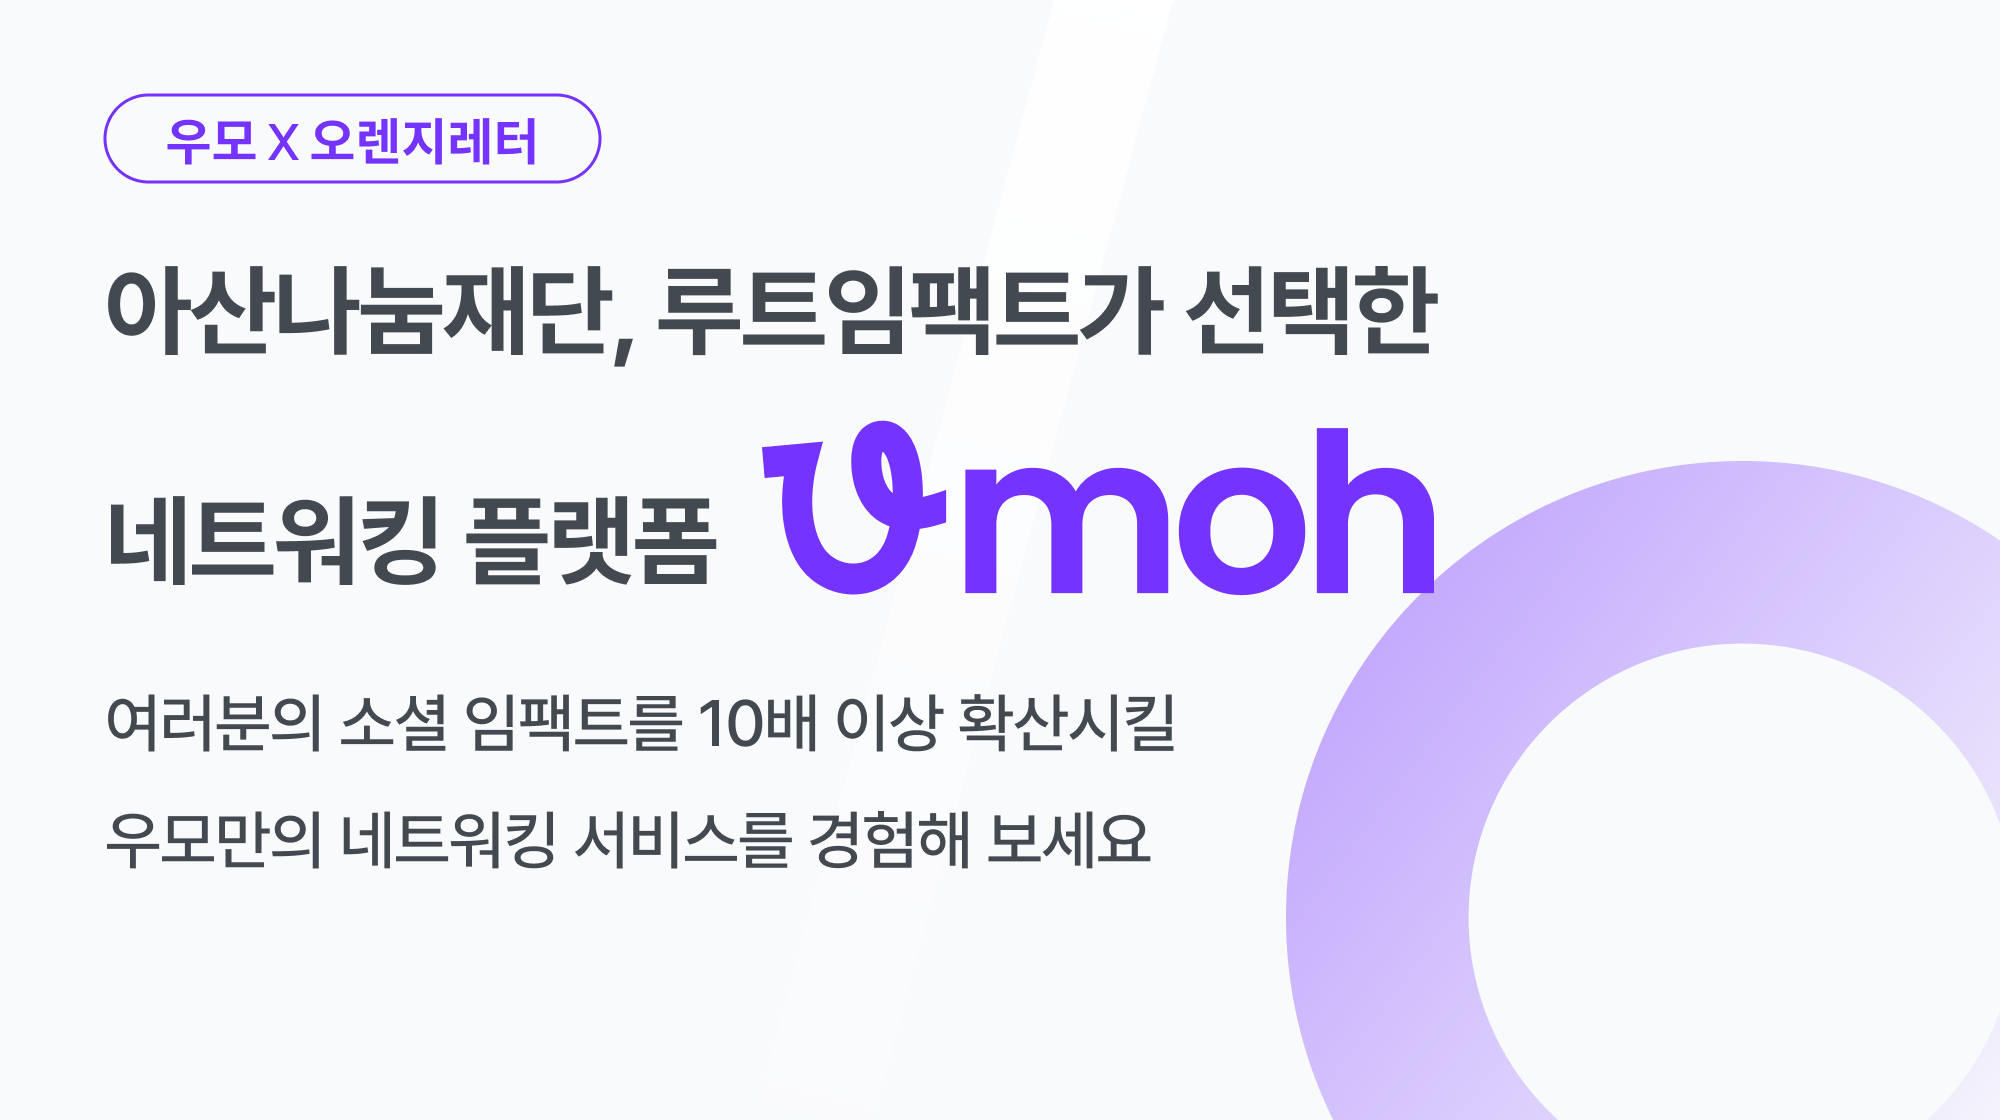 [우모 X 오렌지레터] 아산나눔재단과 루트임팩트가 선택한 네트워킹 플랫폼, 우모(Umoh)